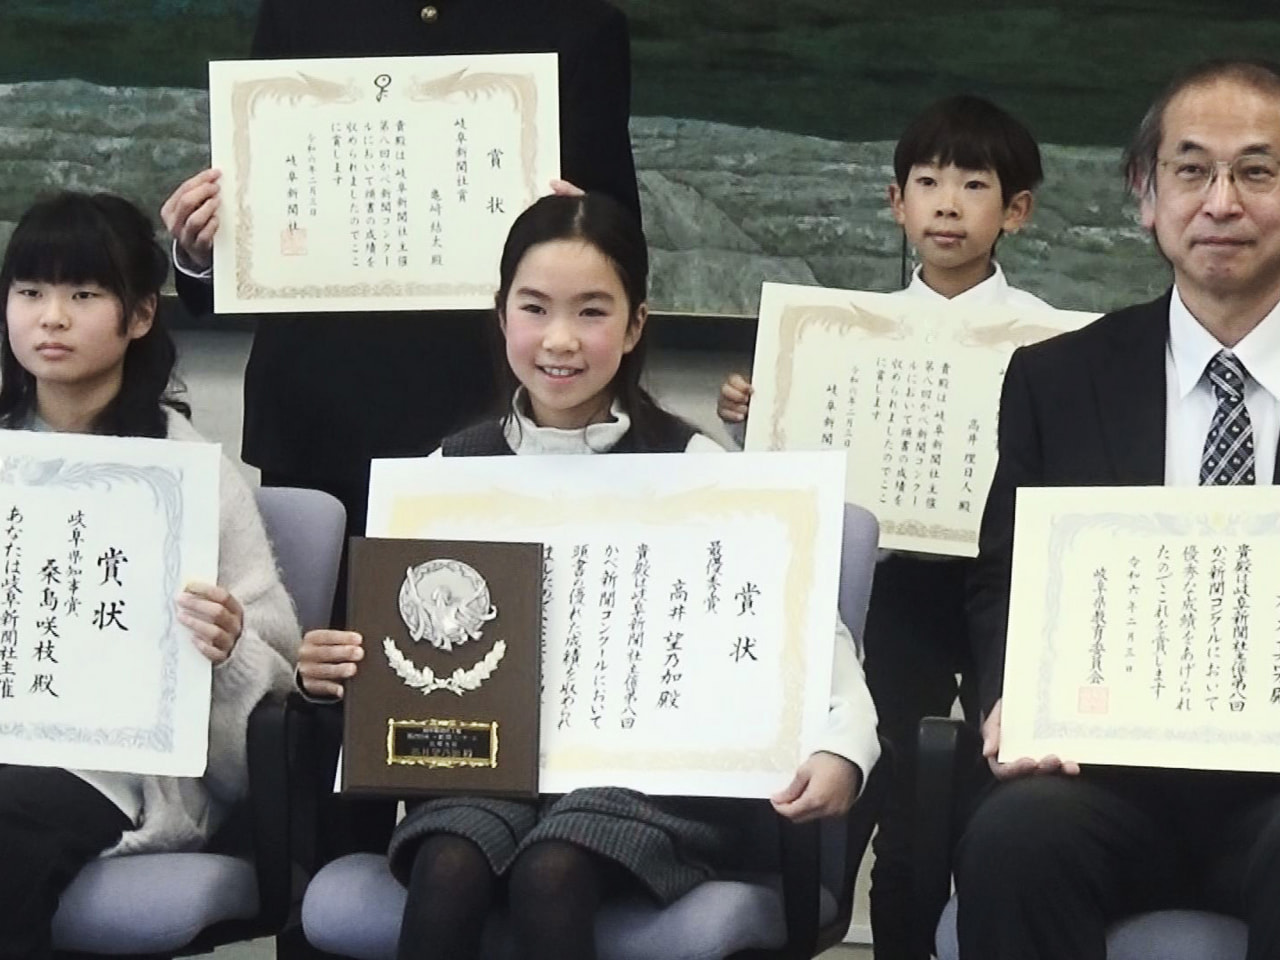 県内の小中学生が手作りした新聞作品の出来栄えを競う「かべ新聞コンクール」の表彰式...